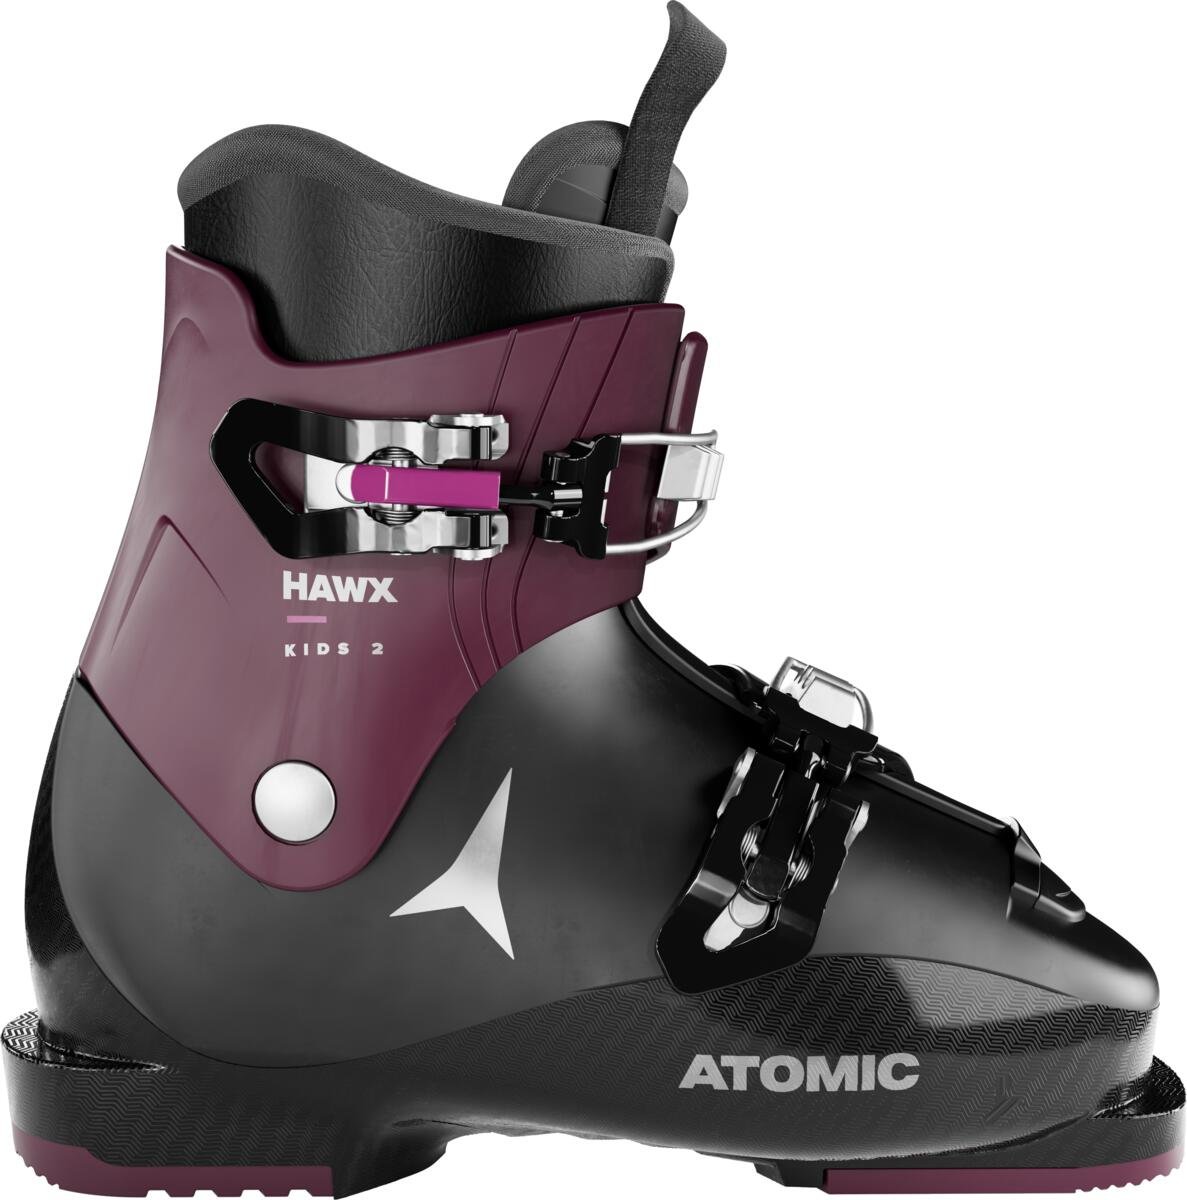 Detské lyžiarky Atomic Hawx Kids 2 Veľkosť: 19 cm